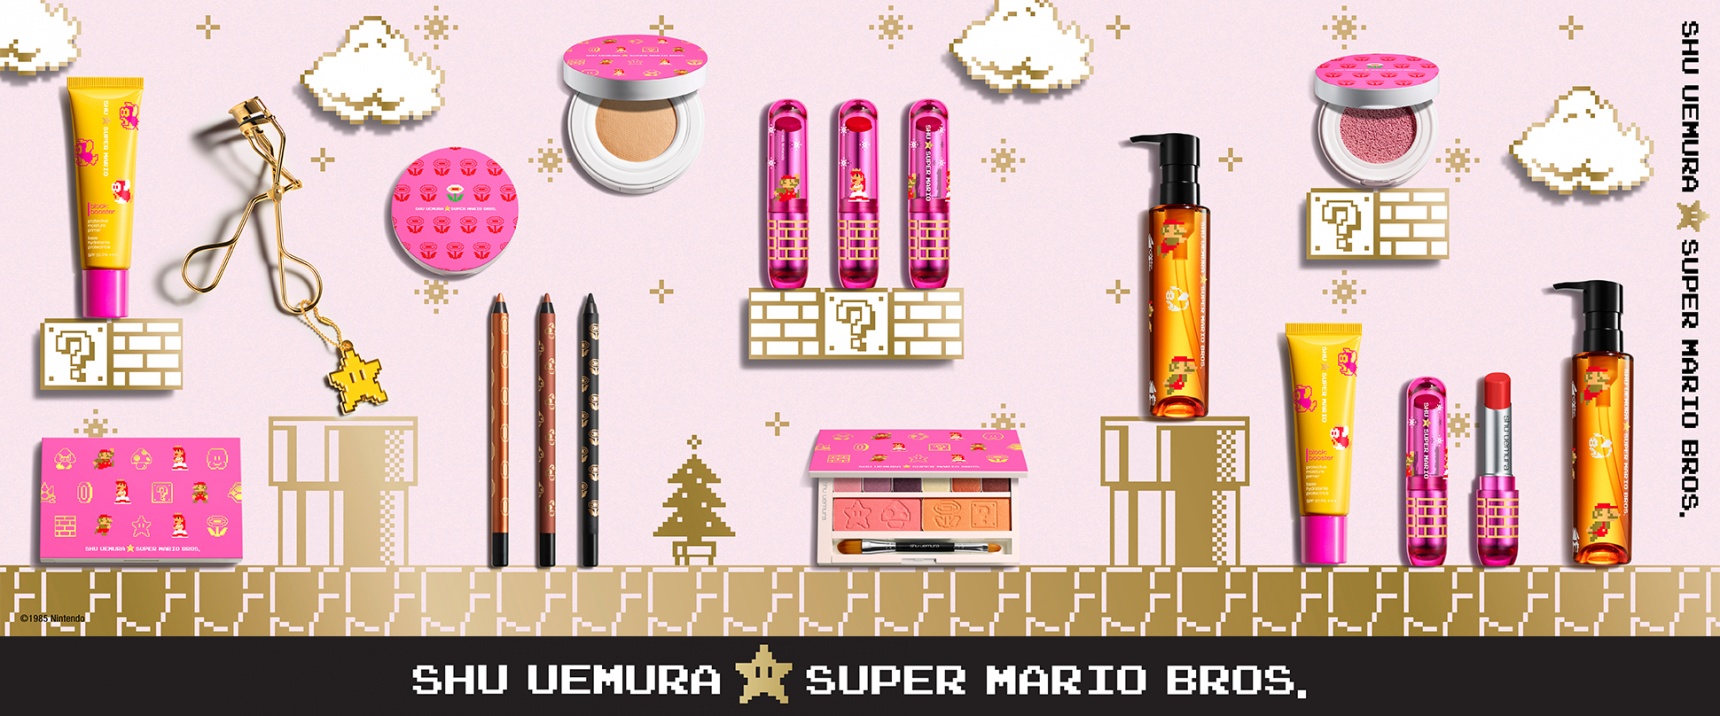 Get Your Hands on Super Mario Bros. Makeup